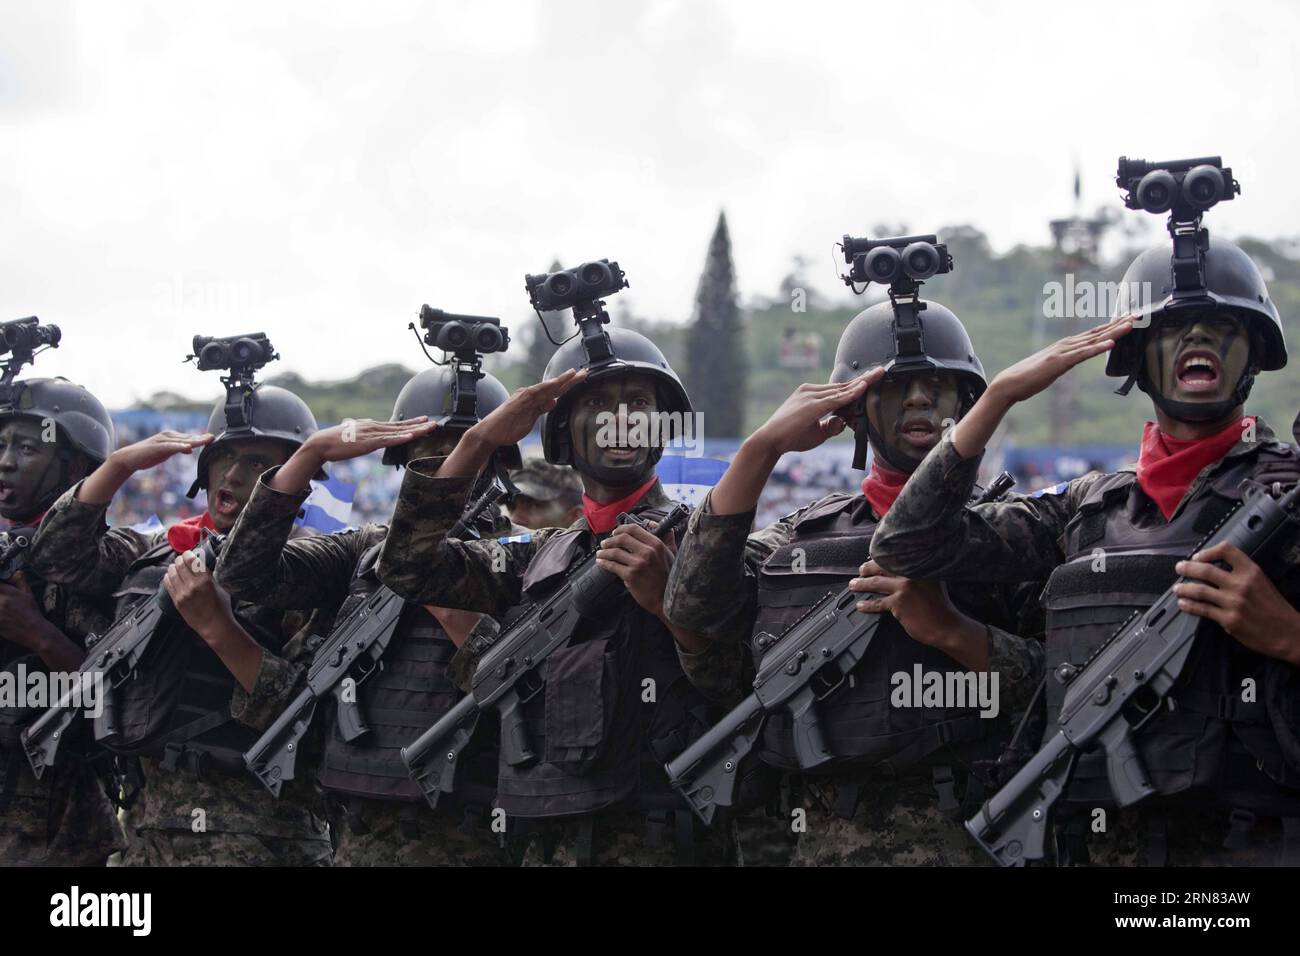 (151004) -- TEGUCIGALPA, 4 octobre 2015 -- des soldats des forces armées du Honduras participent à la célébration de la Journée du soldat au Stade national de Tegucigalpa, capitale du Honduras, le 3 octobre 2015. Selon la presse locale, chaque 3 octobre est célébré au Honduras la Journée du Soldat, pour marquer la commémoration de la naissance du général hondurien Francisco Morazan. Rafael Ochoa) (jp) (fnc) HONDURAS-TEGUCIGALPA-JOURNÉE MILITAIRE DU SOLDAT e RAFAELxOCHOA PUBLICATIONxNOTxINxCHN Tegucigalpa OCT 4 2015 soldats des forces armées honduriennes participent à la célébration du jour du vendu Banque D'Images